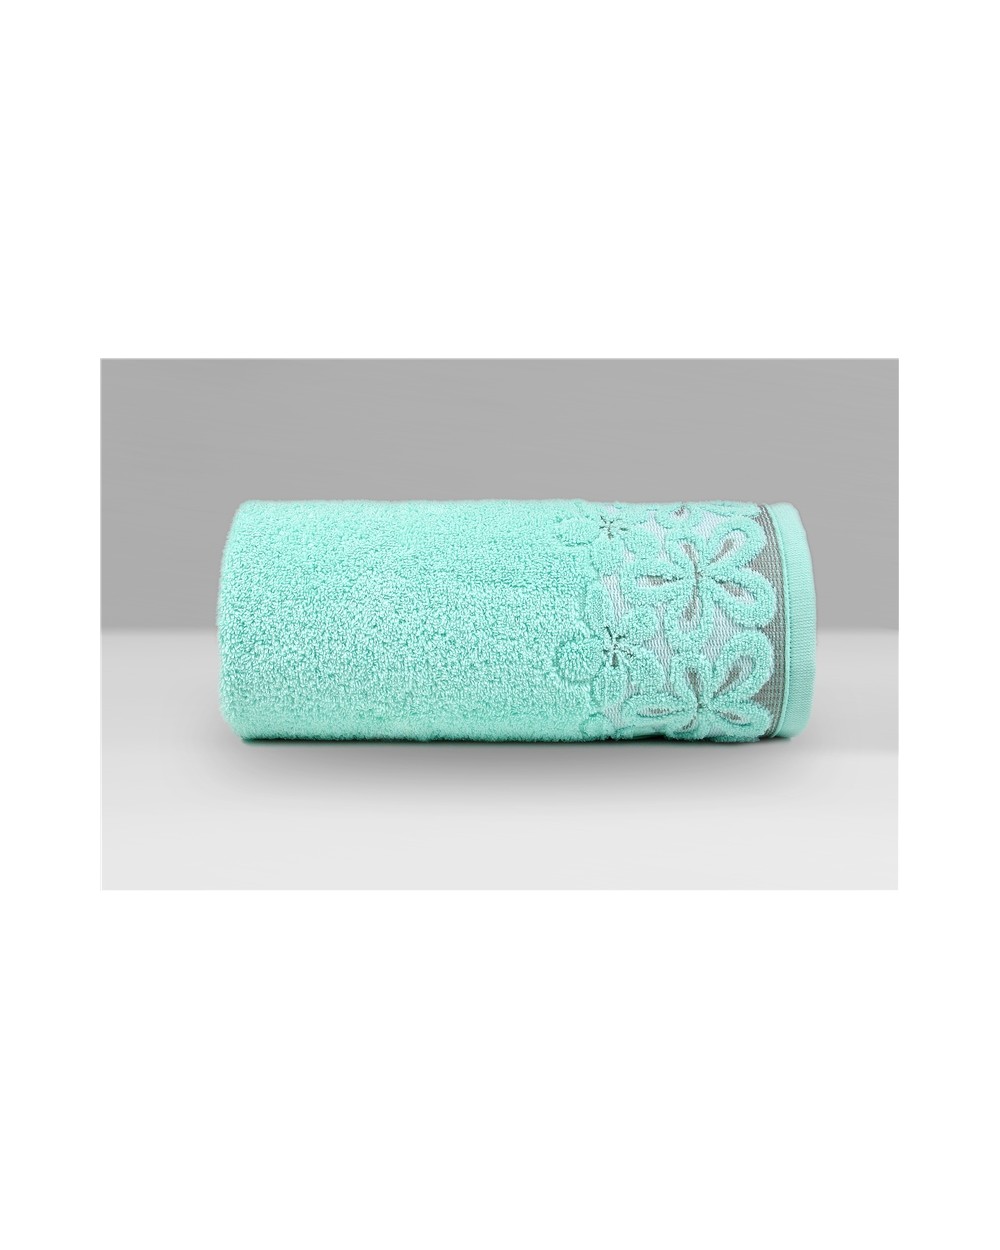 Ręcznik Bella mikrobawełna 30x50 miętowy